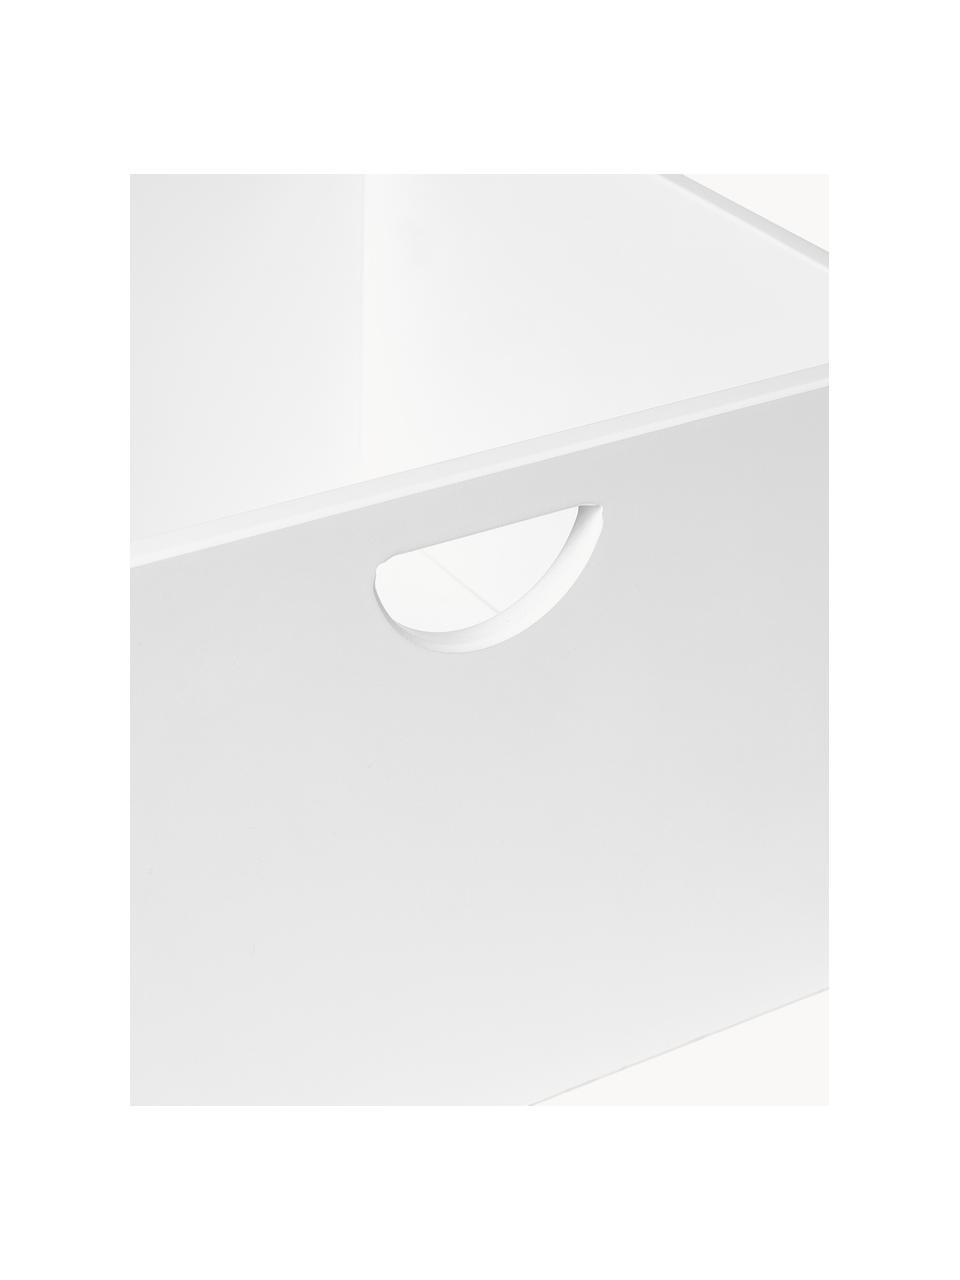 Zásuvky Nunila, 2 ks, Lakovaná MDF deska (dřevovláknitá deska střední hustoty), Bílá, Š 36 cm, V 25 cm